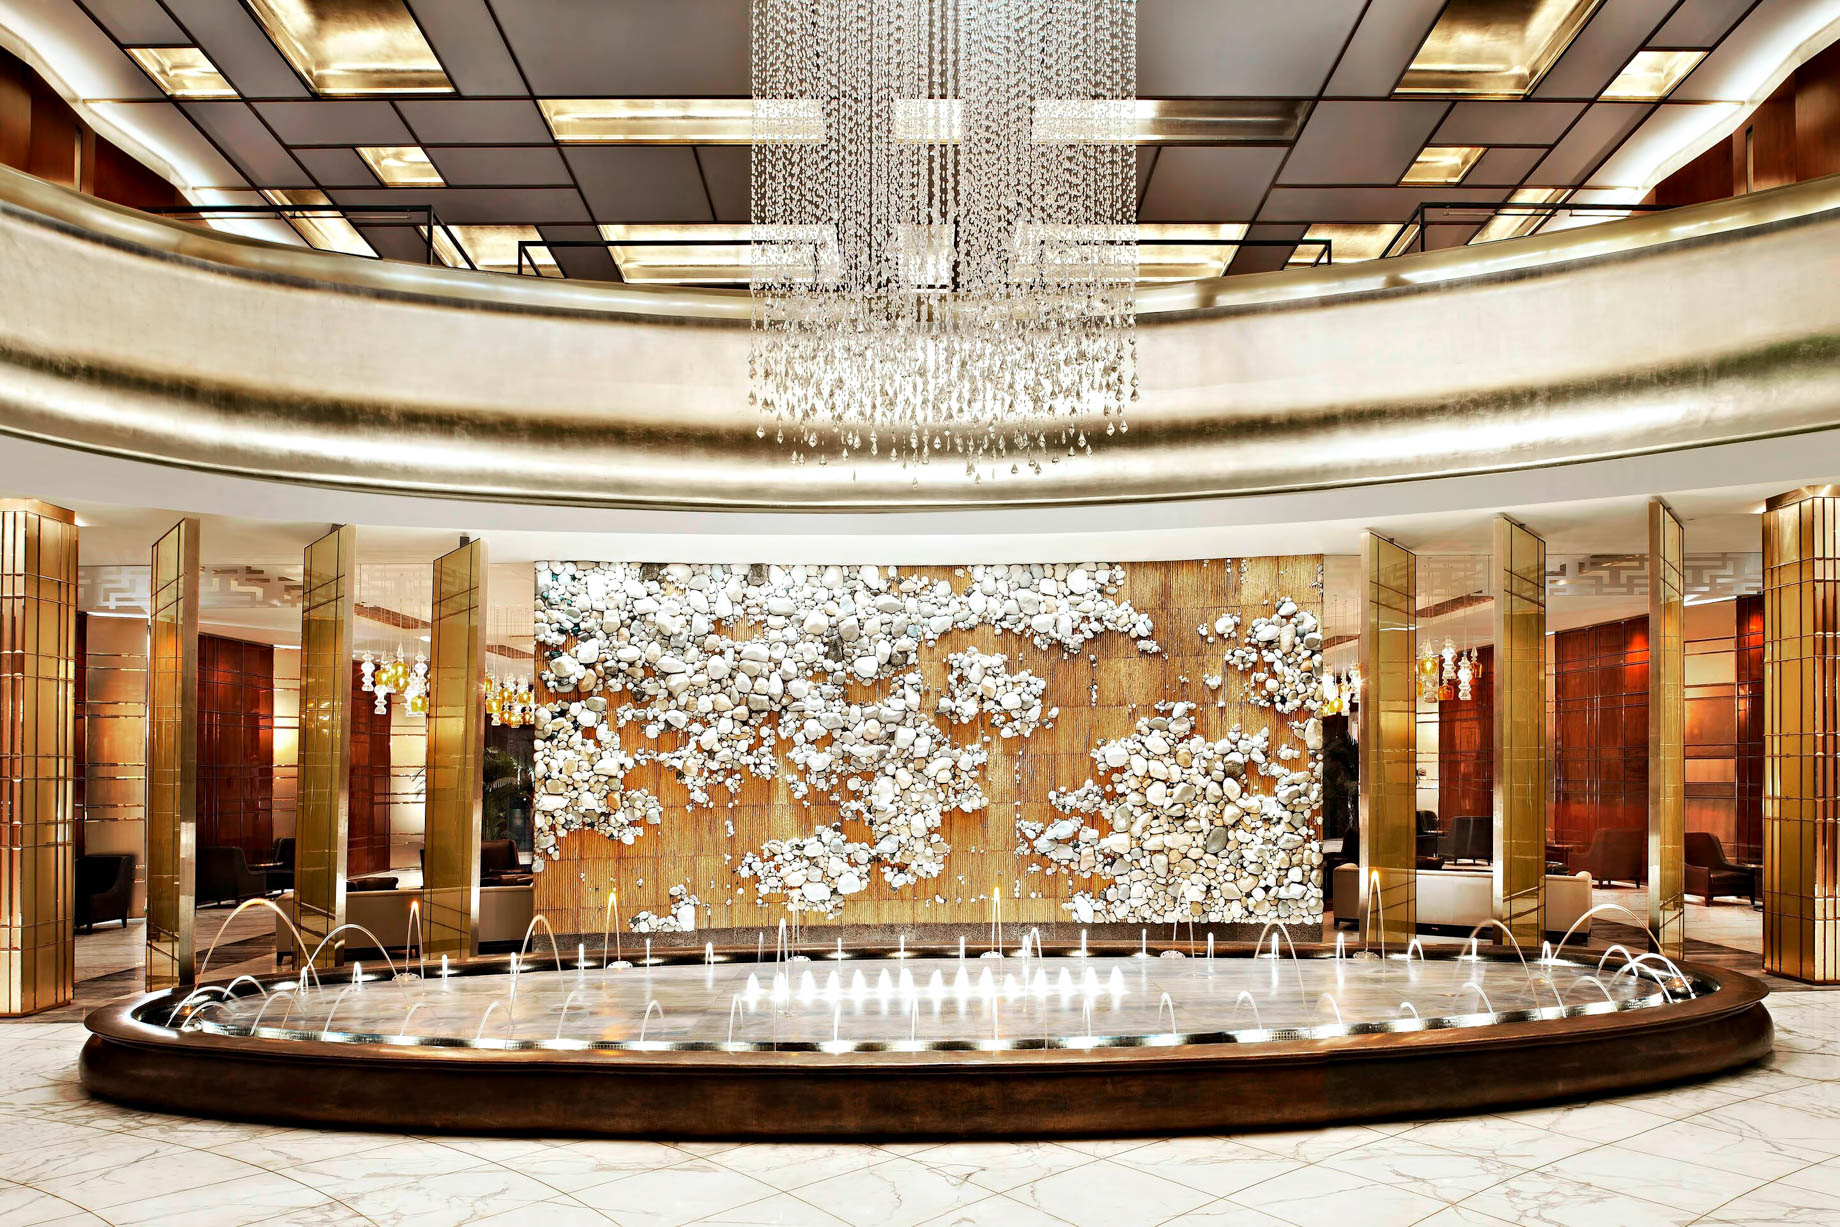 The St. Regis Tianjin Hotel - Tianjin, China - Lobby Fountain